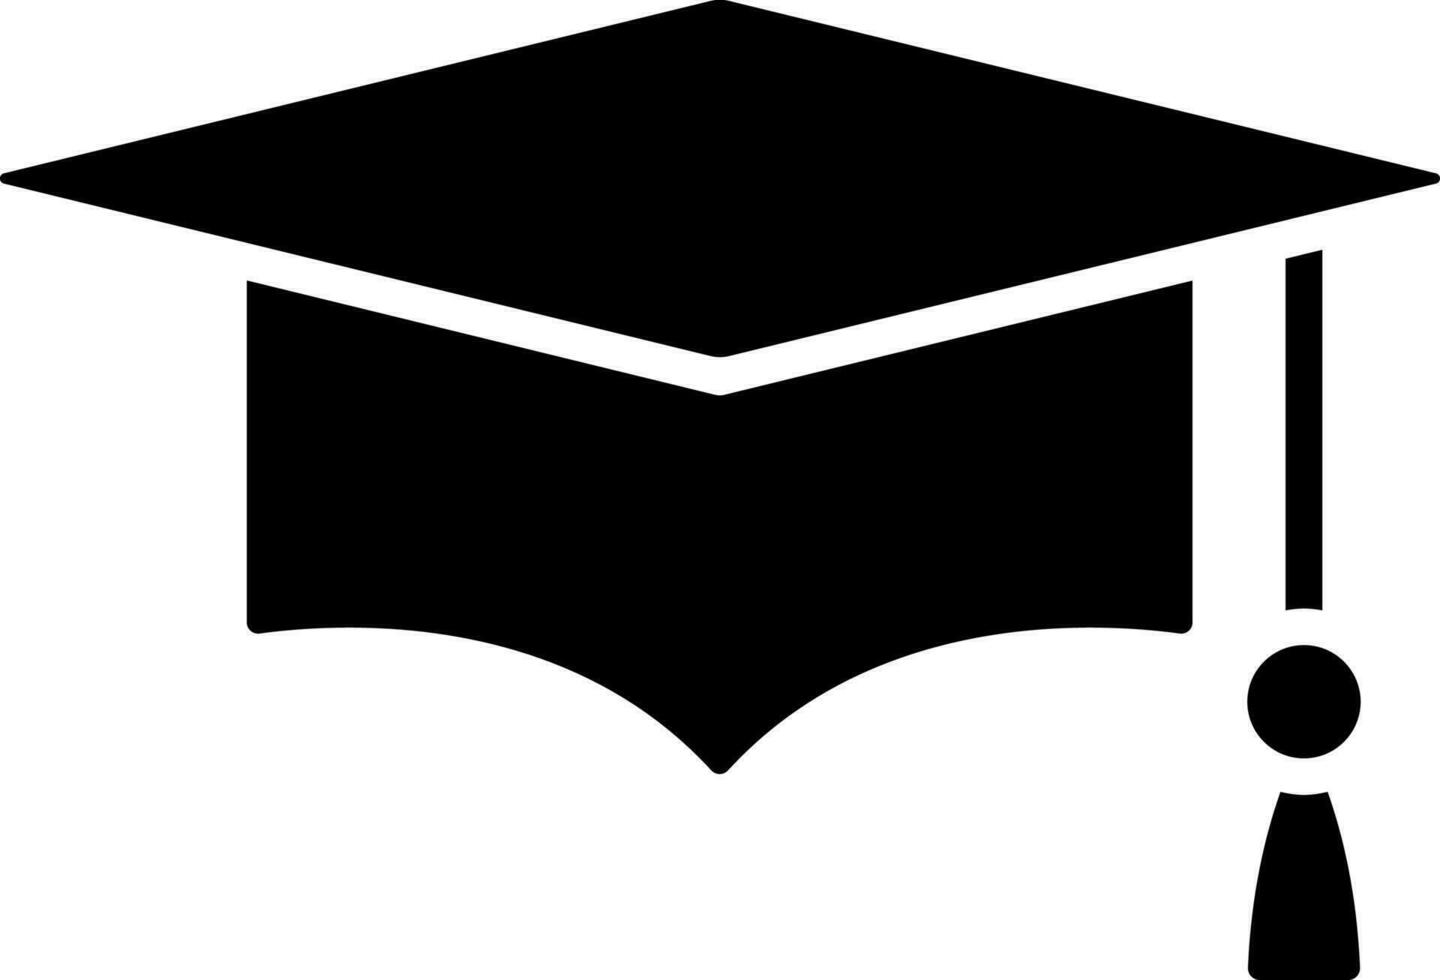 Graduation cap glyph icon or symbol. vector